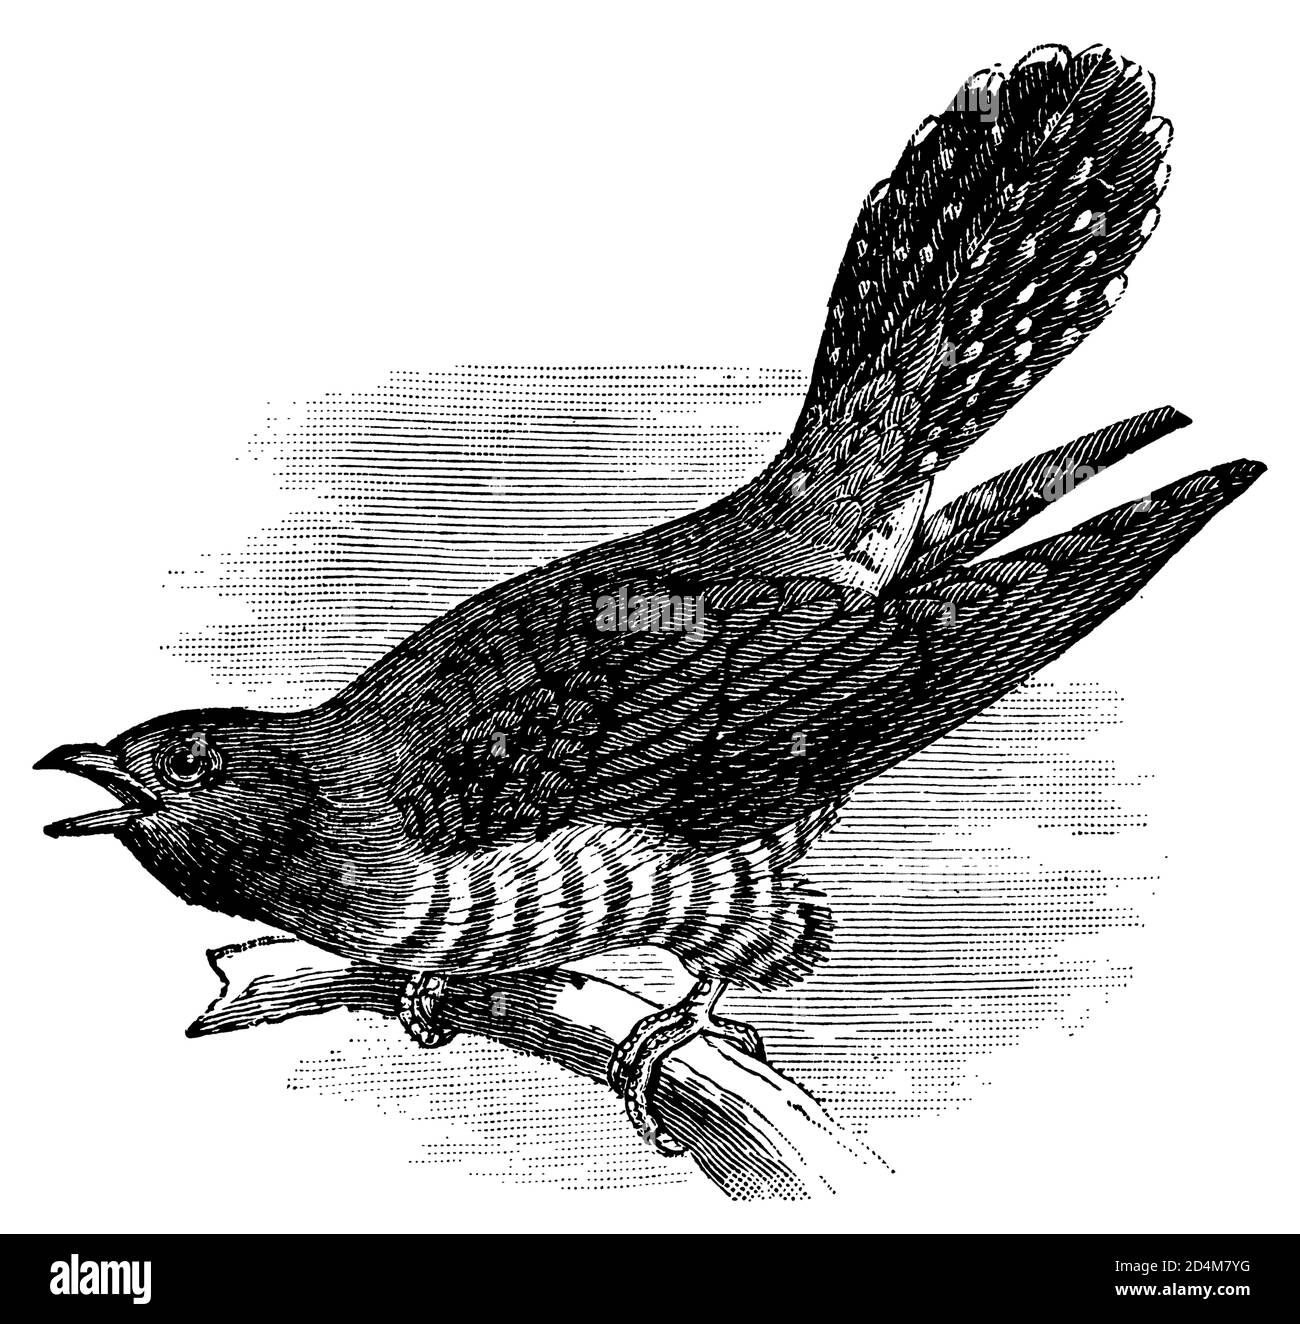 Cuculo uccello immagini e fotografie stock ad alta risoluzione - Alamy